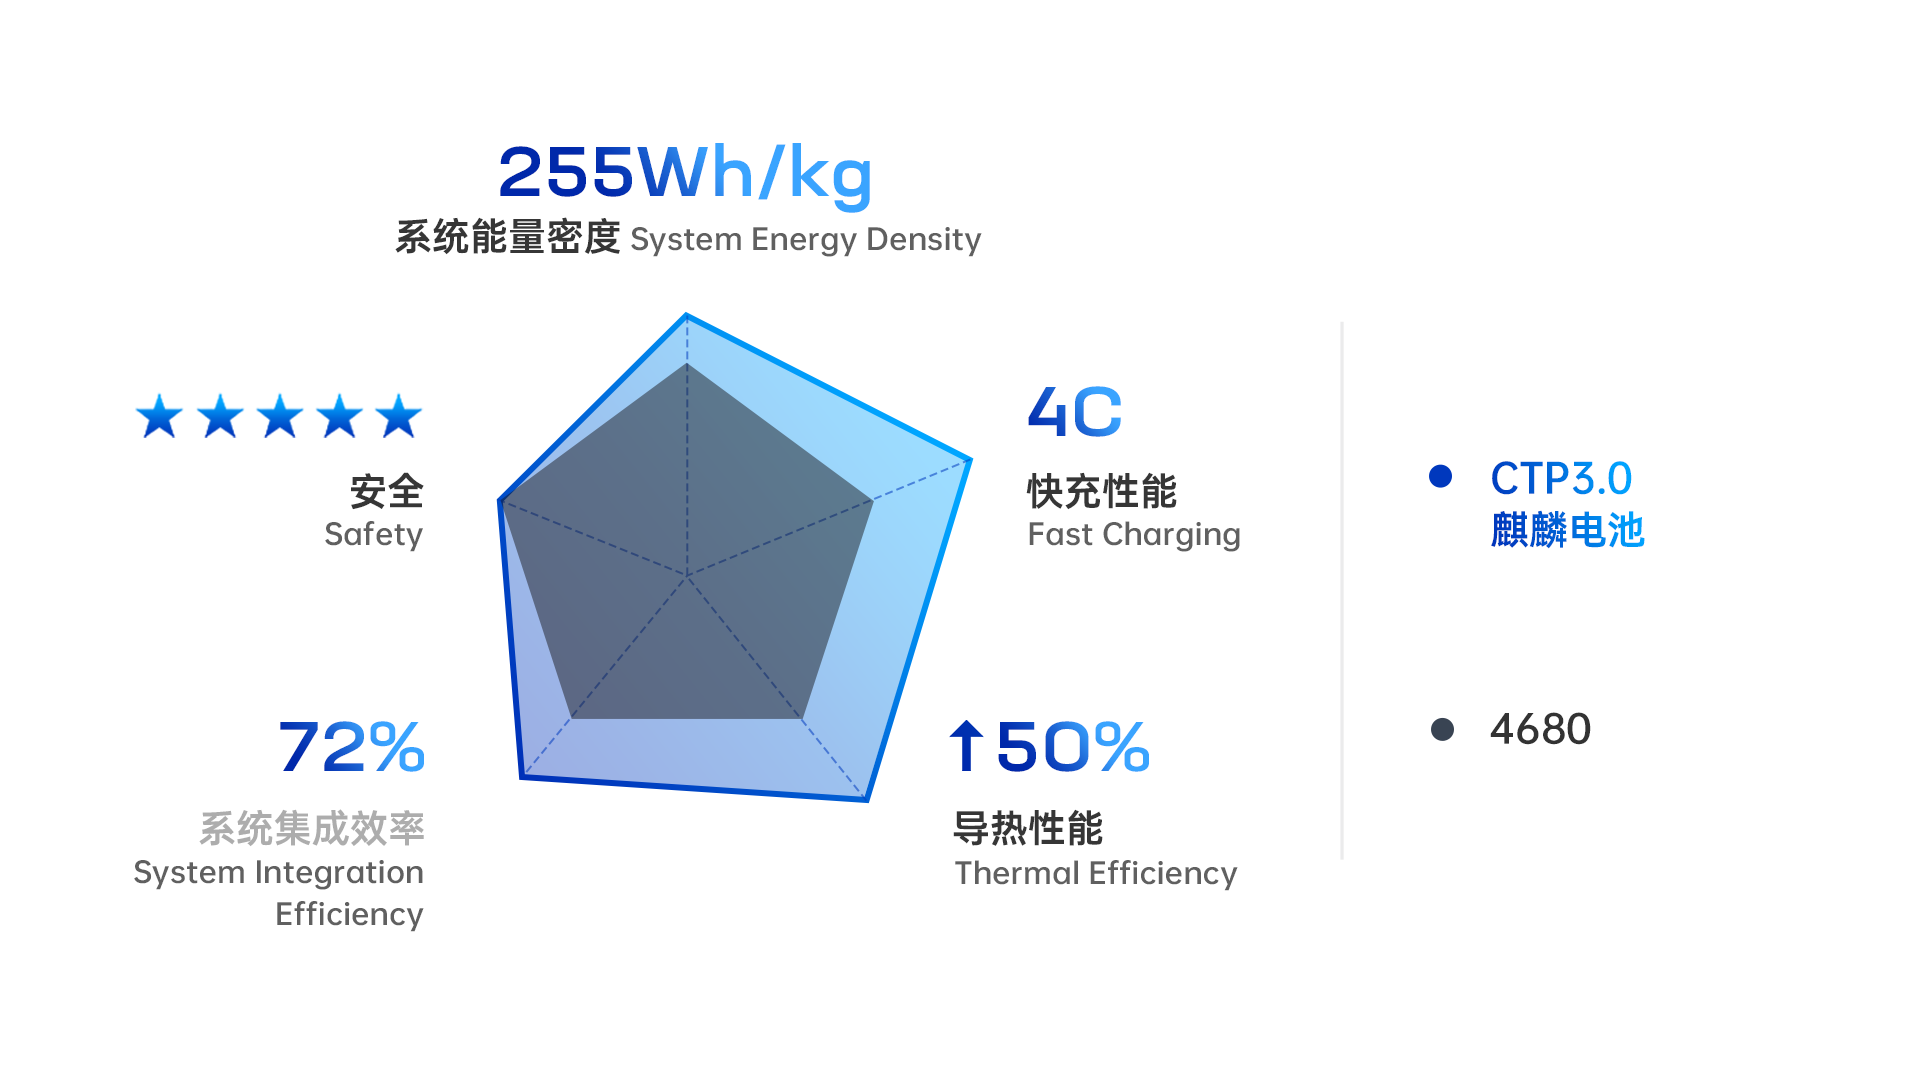 9. CTP 3.0 麒麟电池性能 vs. 4680 Qilin Battery vs. 4680.png